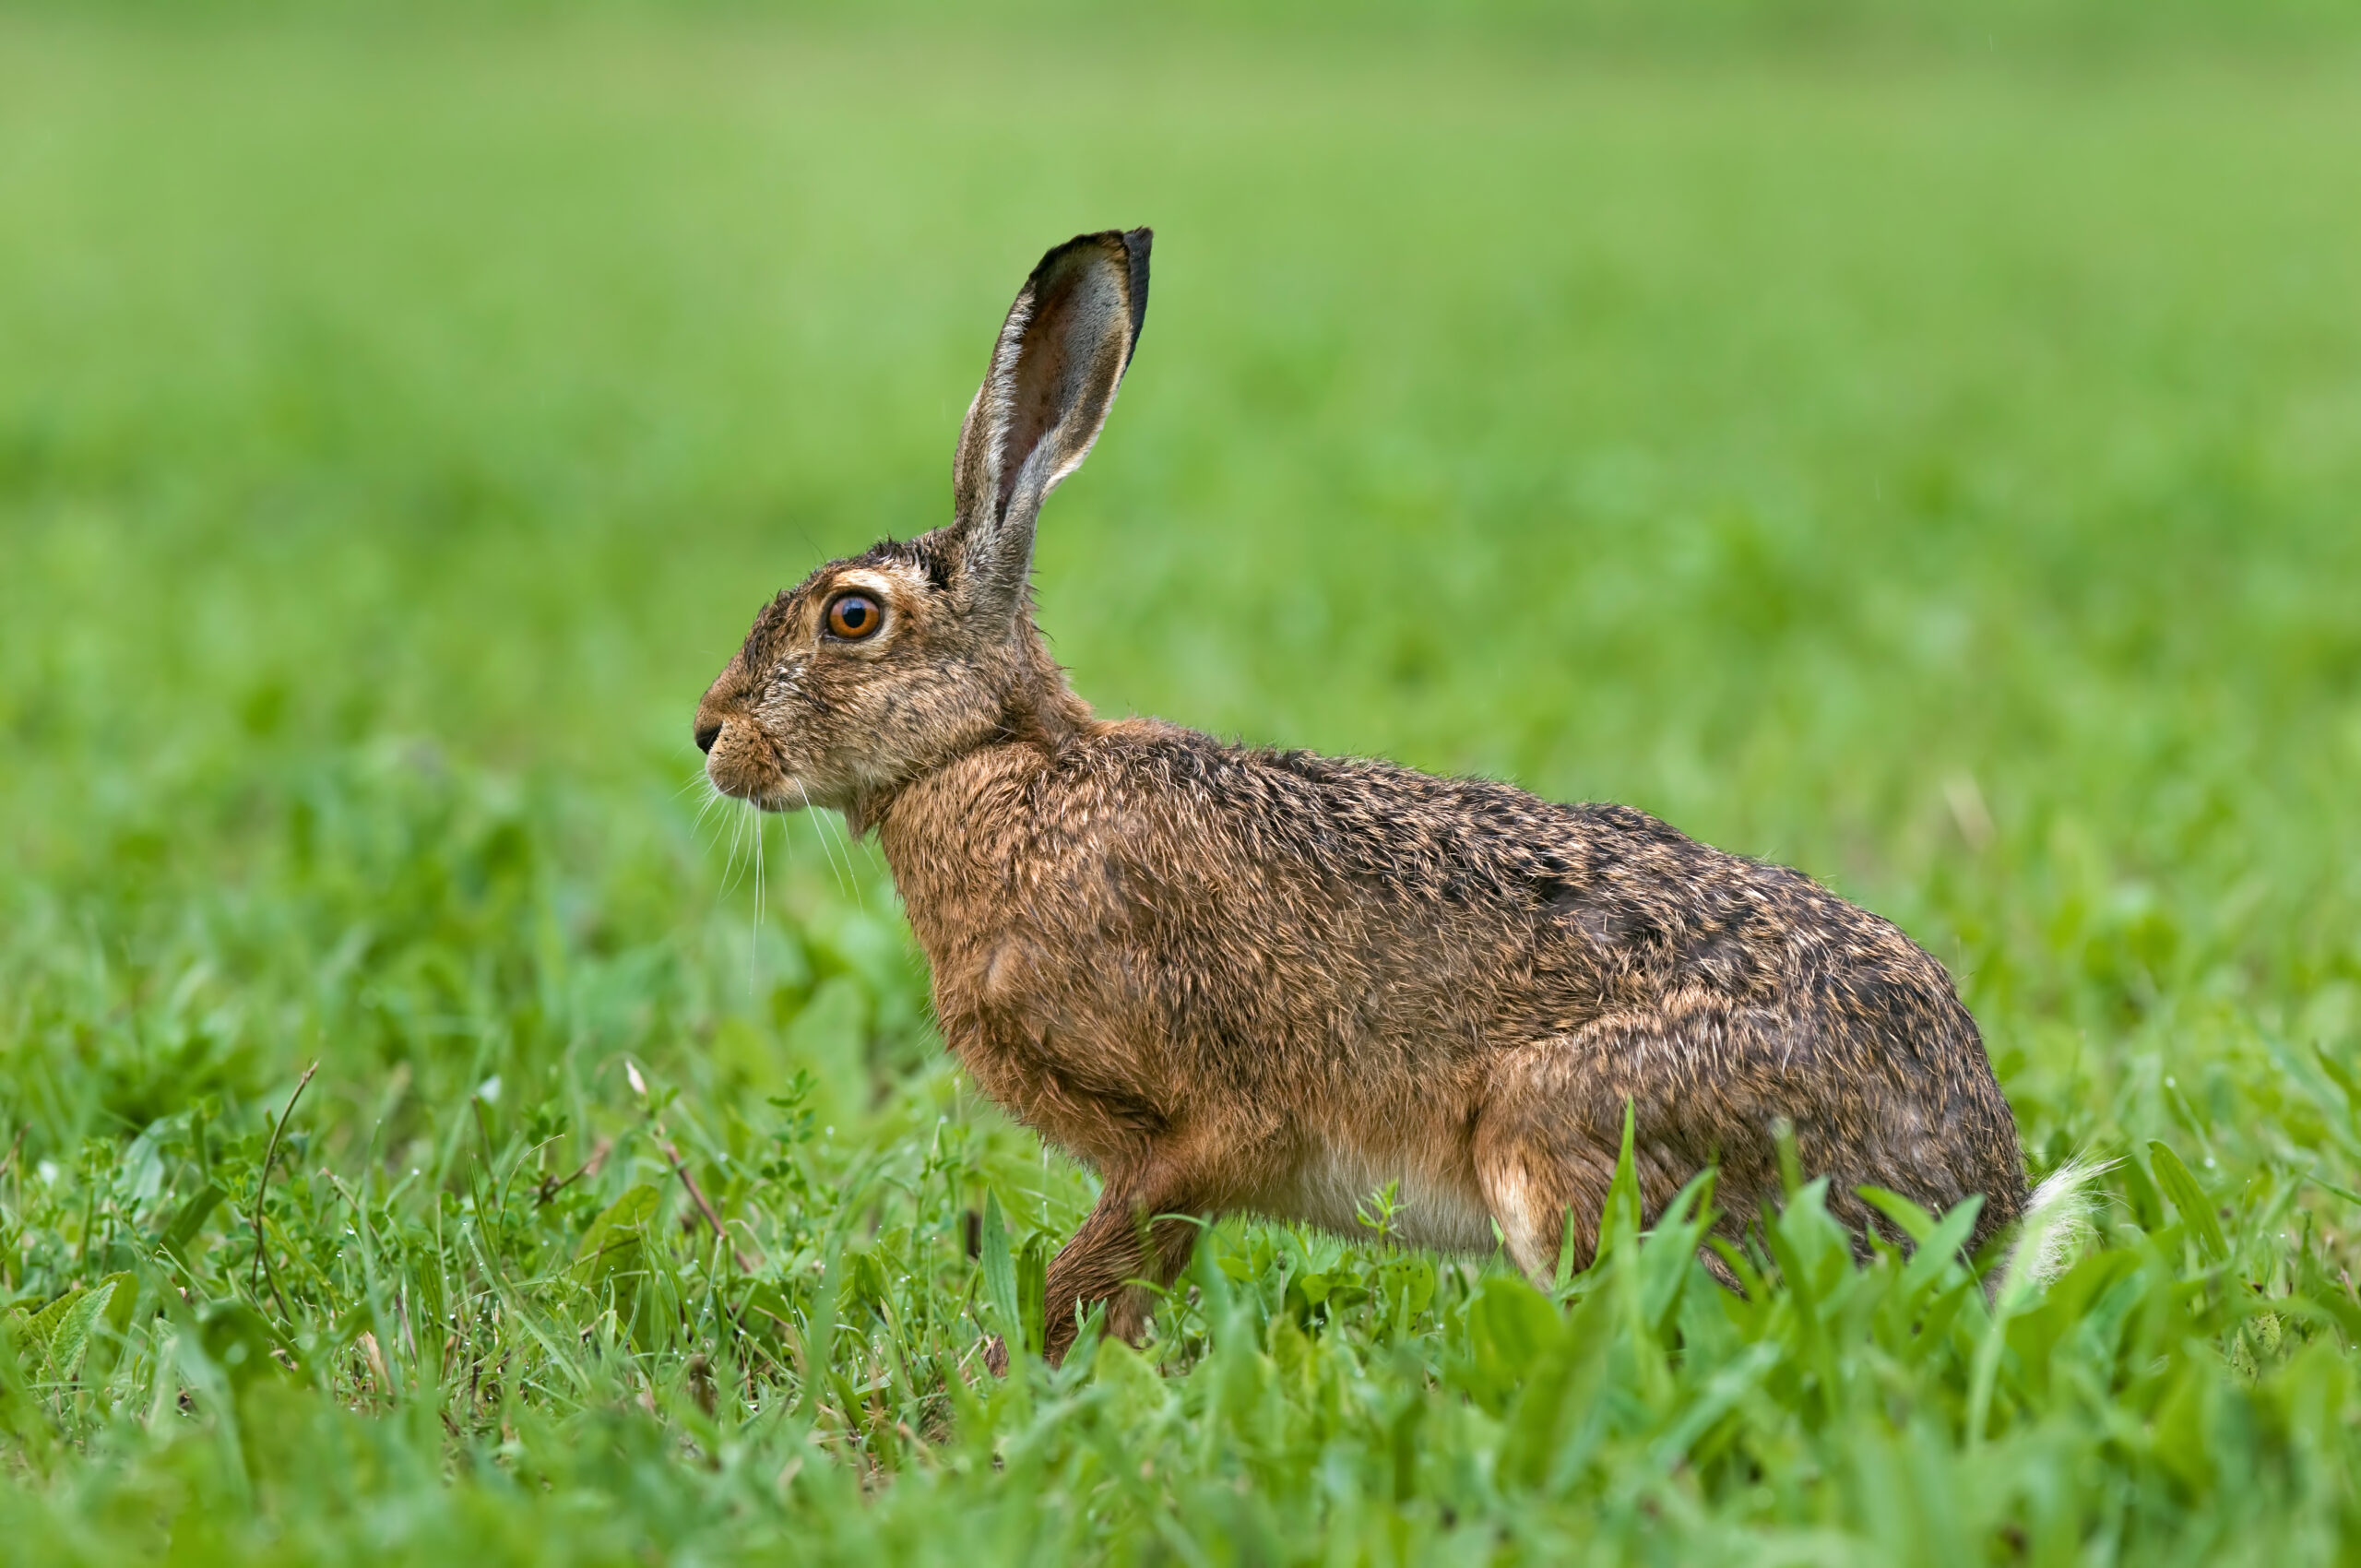 Lokale jagers ontstemd over verbod konijnenjacht: ‘Ook wij willen een mooie, diverse natuur’